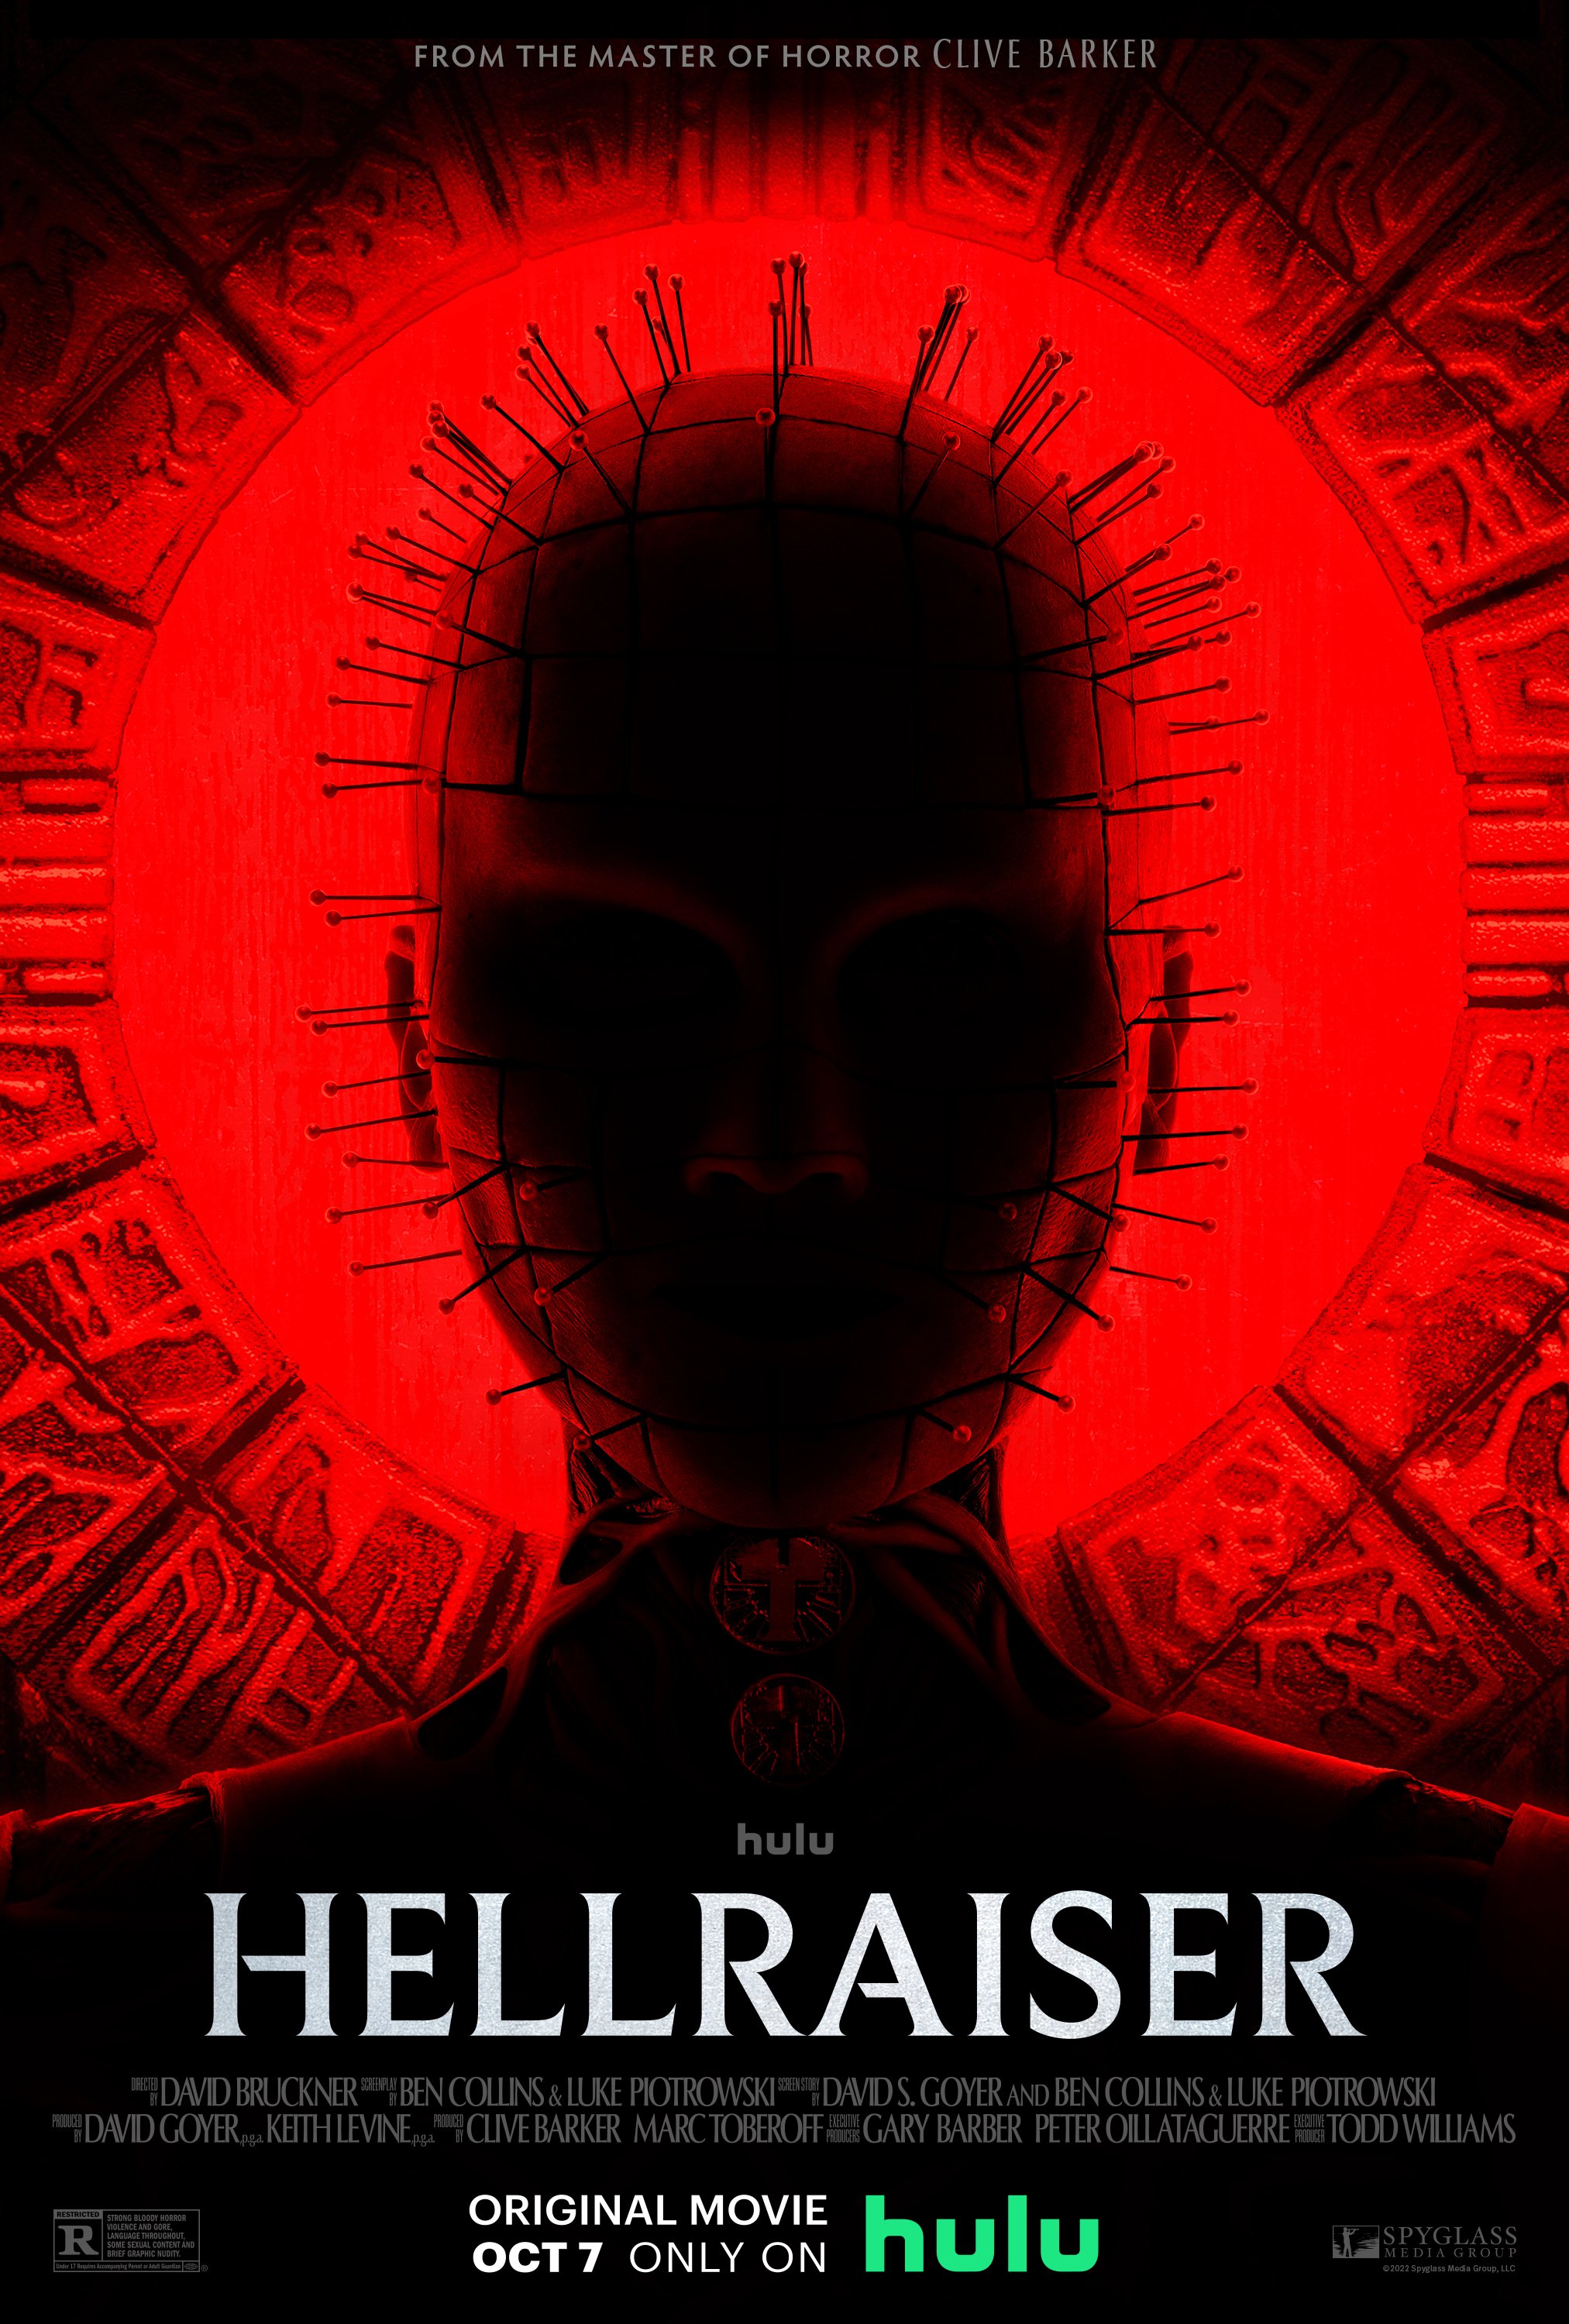 Hellraiser image © Hulu